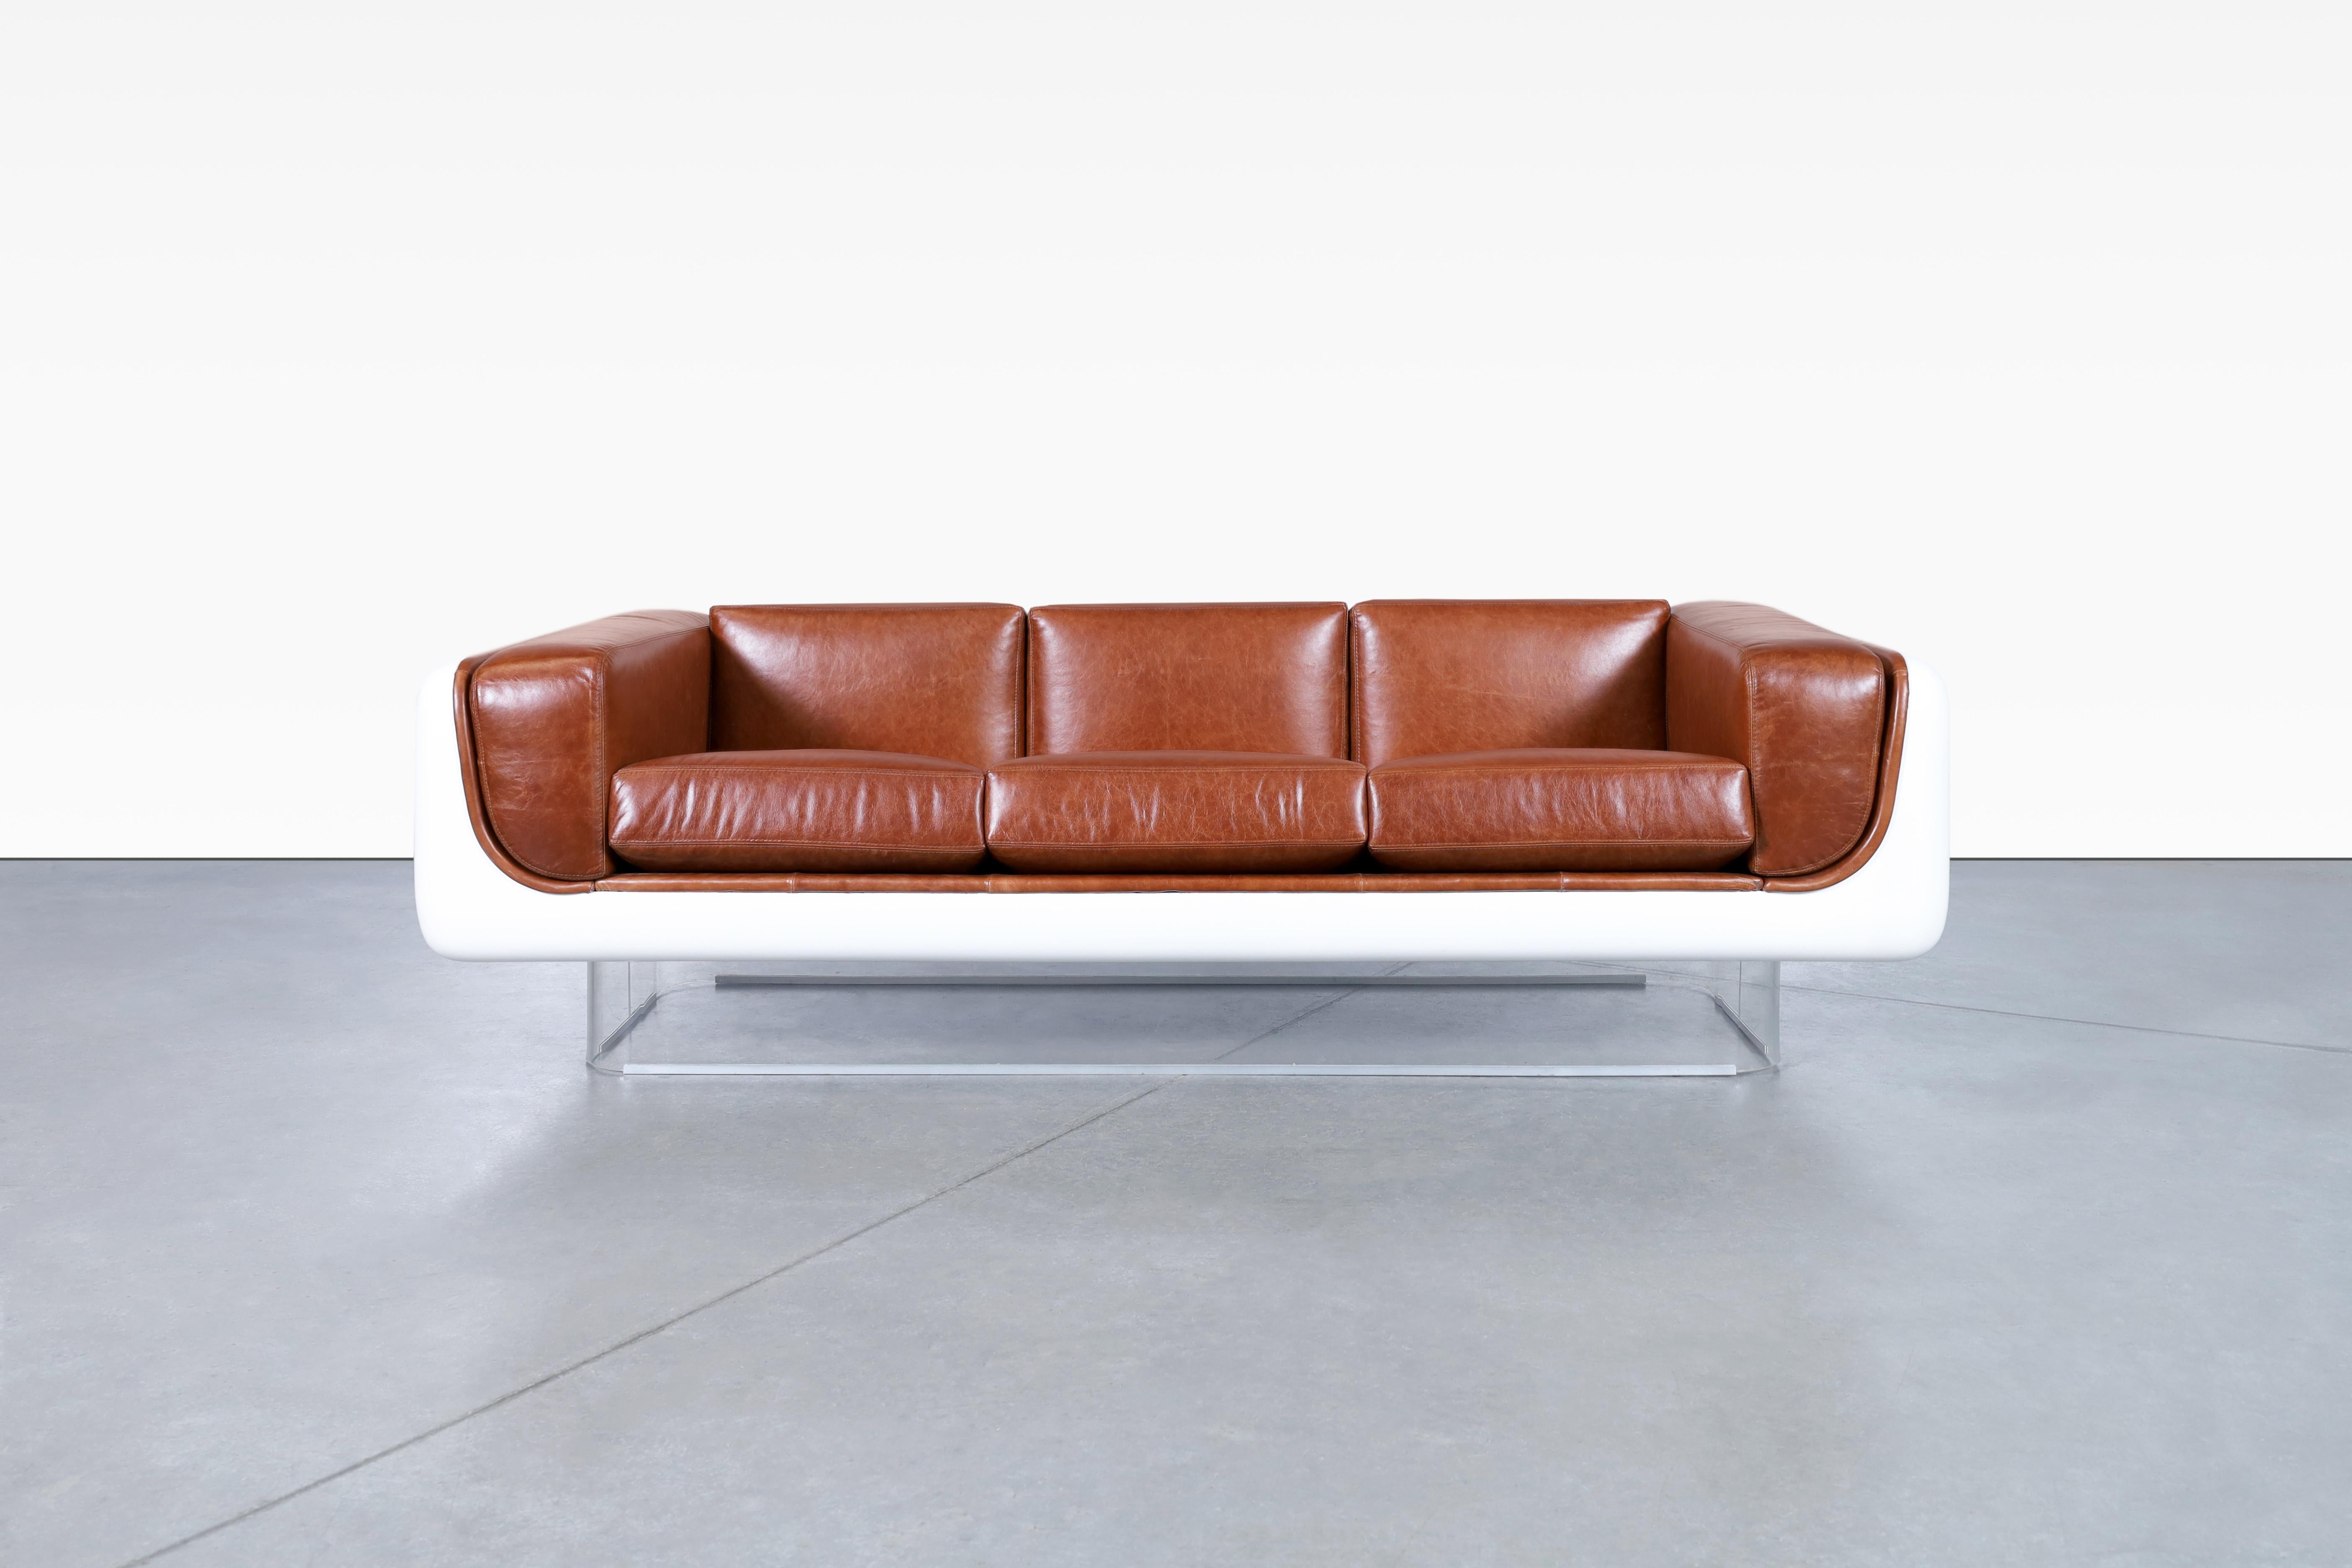 Magnifique canapé vintage en cuir et lucite conçu par William C. Andrus pour Steelcase aux États-Unis, vers les années 1970. Le canapé nouvellement retapissé n'est pas seulement un meuble étonnant, c'est une œuvre d'art qui vous coupera le souffle.